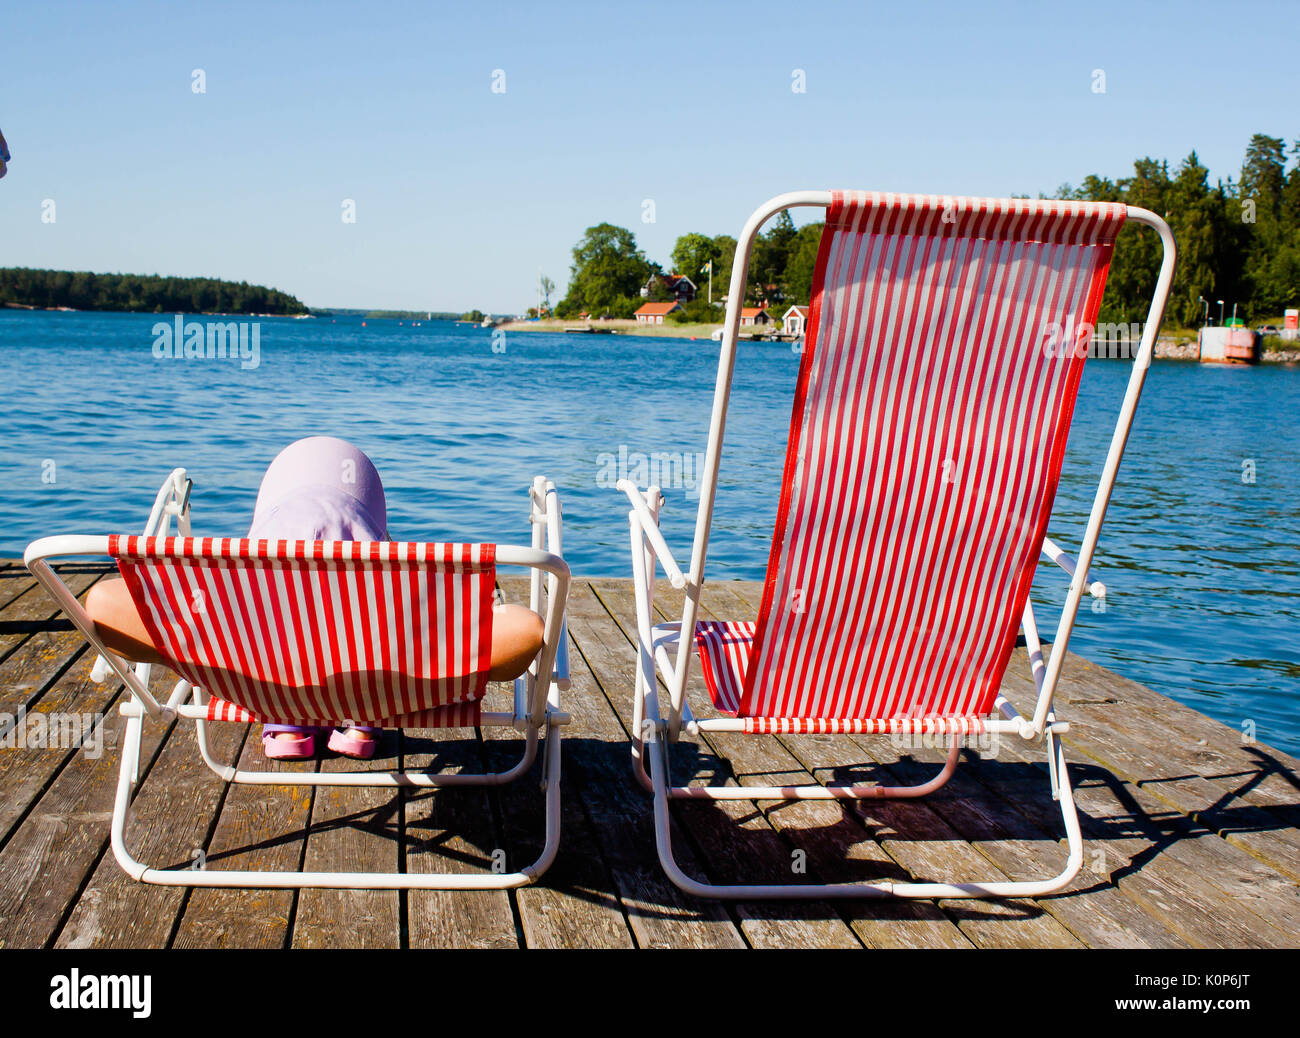 Girl sunbathing Stockfotos und -bilder Kaufen - Alamy